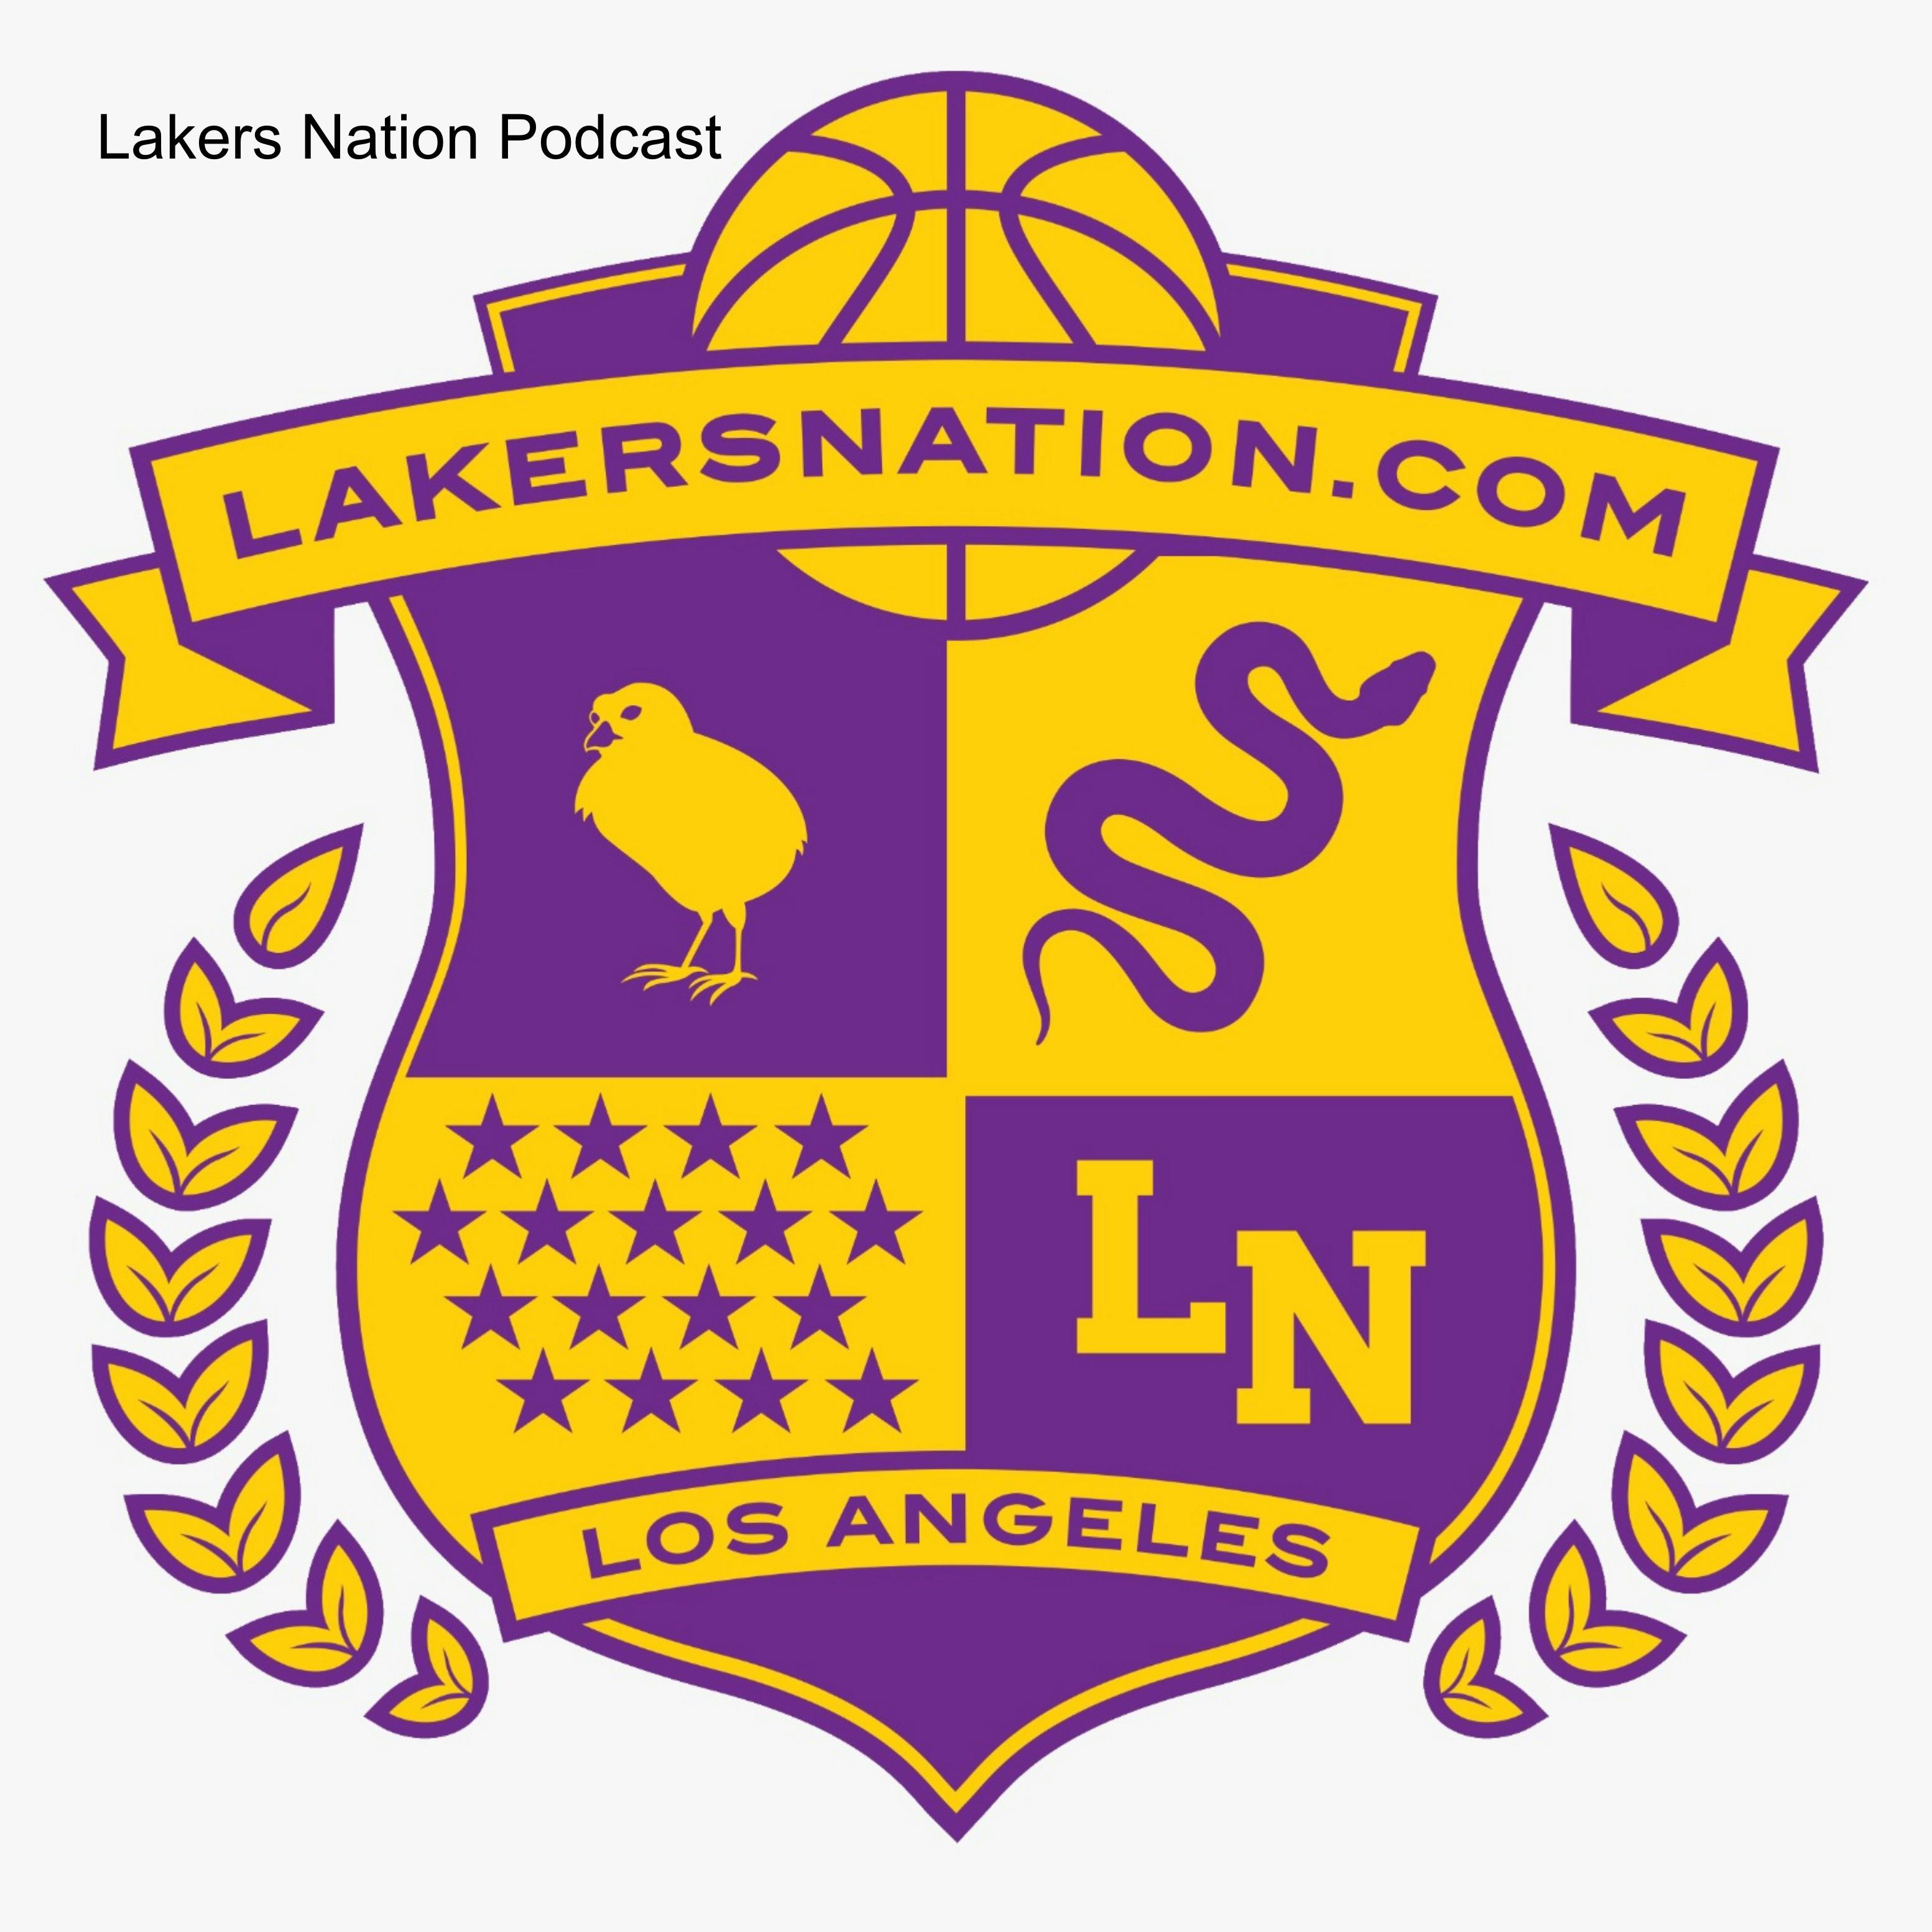 Lakers 120-117 Spurs (Nov 6, 2003) Final Score - ESPN